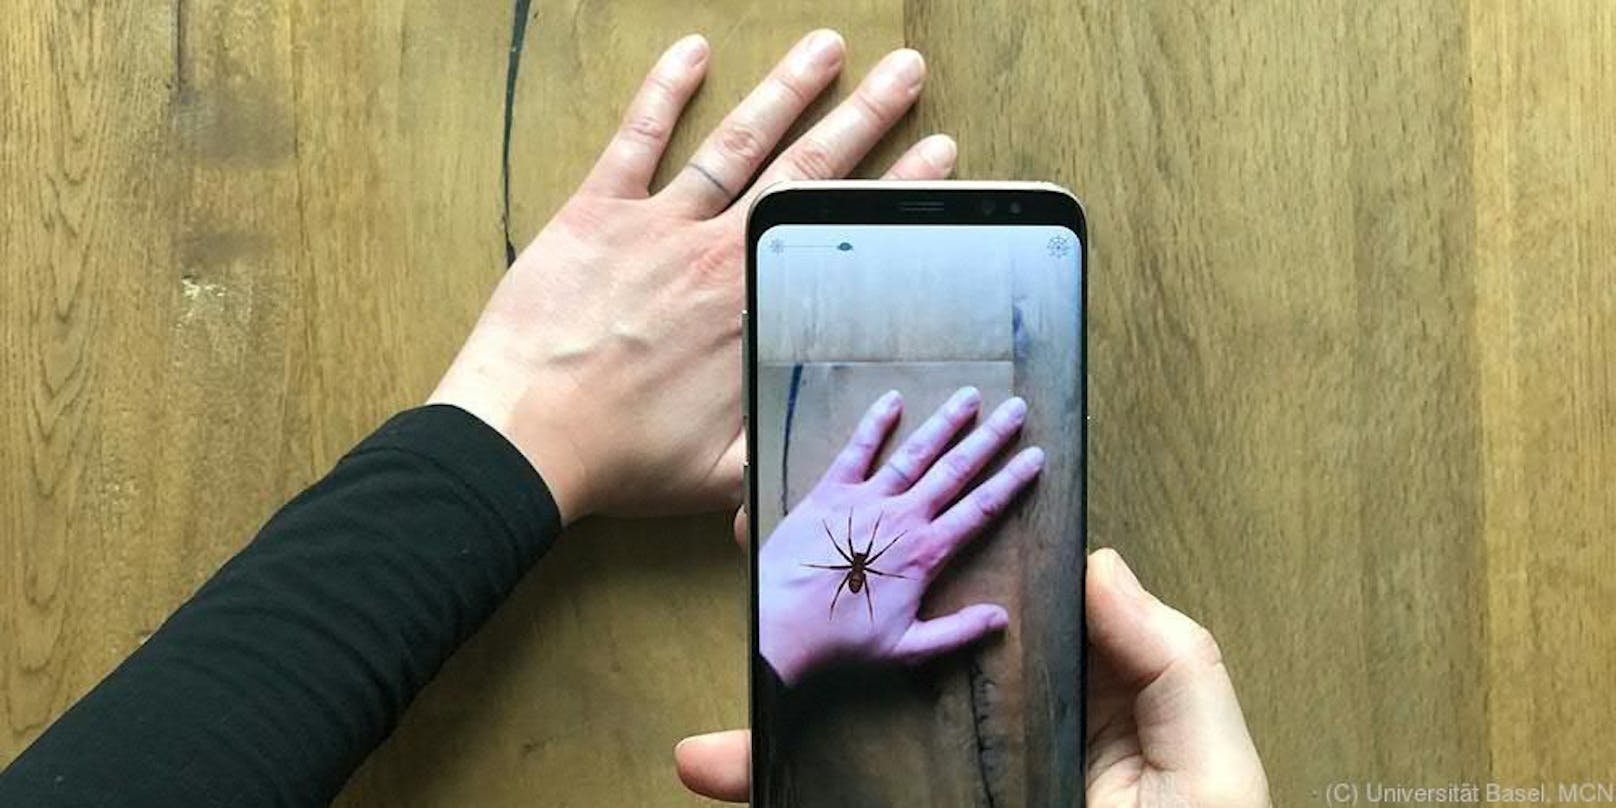 Mit der App "Phobys" können Menschen mit Spinnenphobie die Begegnung mit einer virtuellen Spinne trainieren.